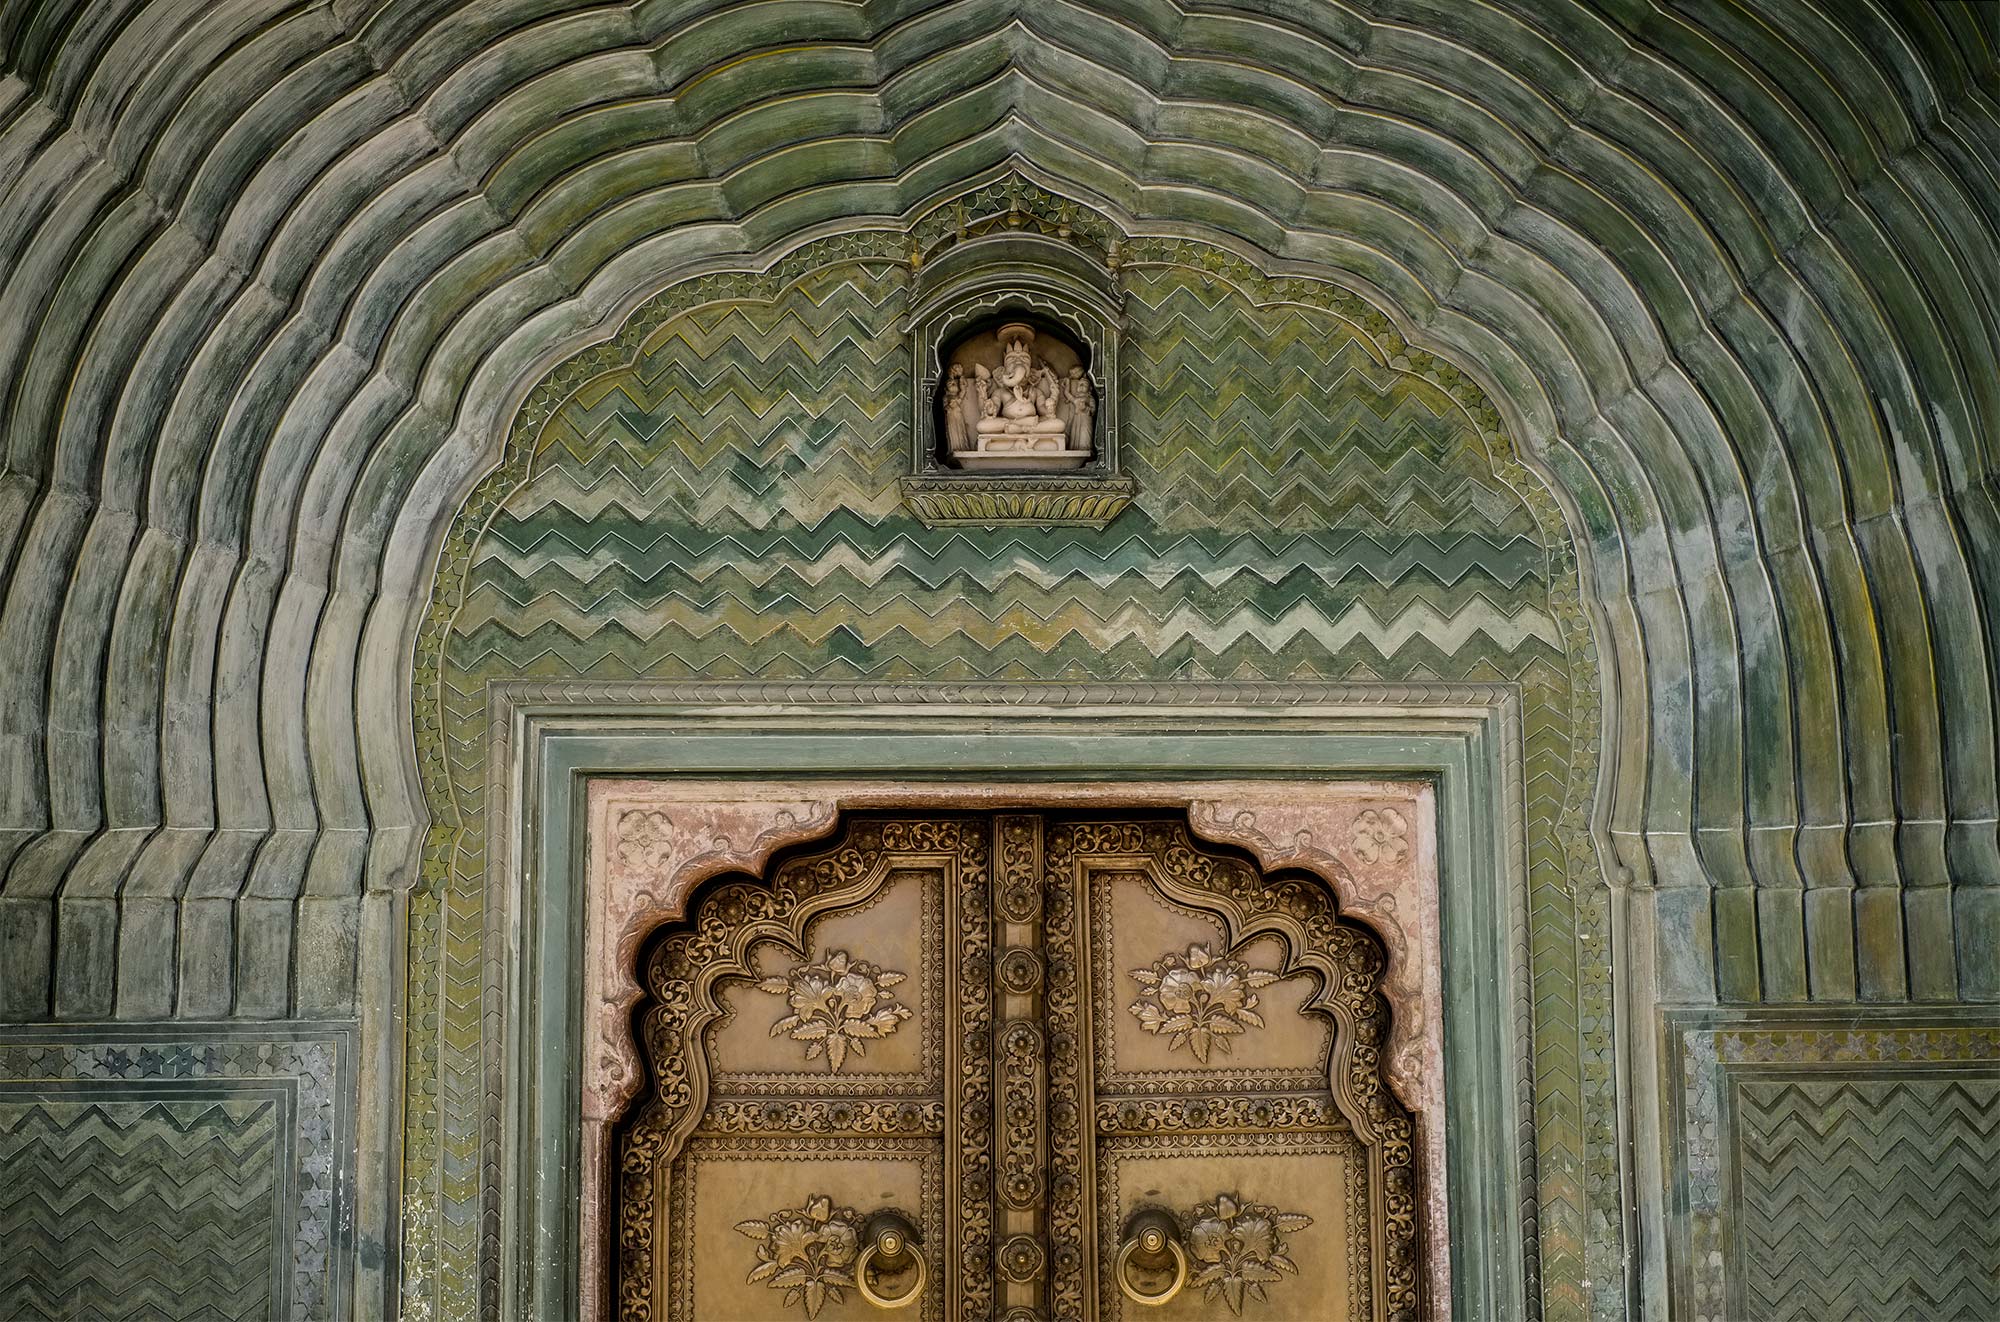 India photo workshops, Jaipur architecture